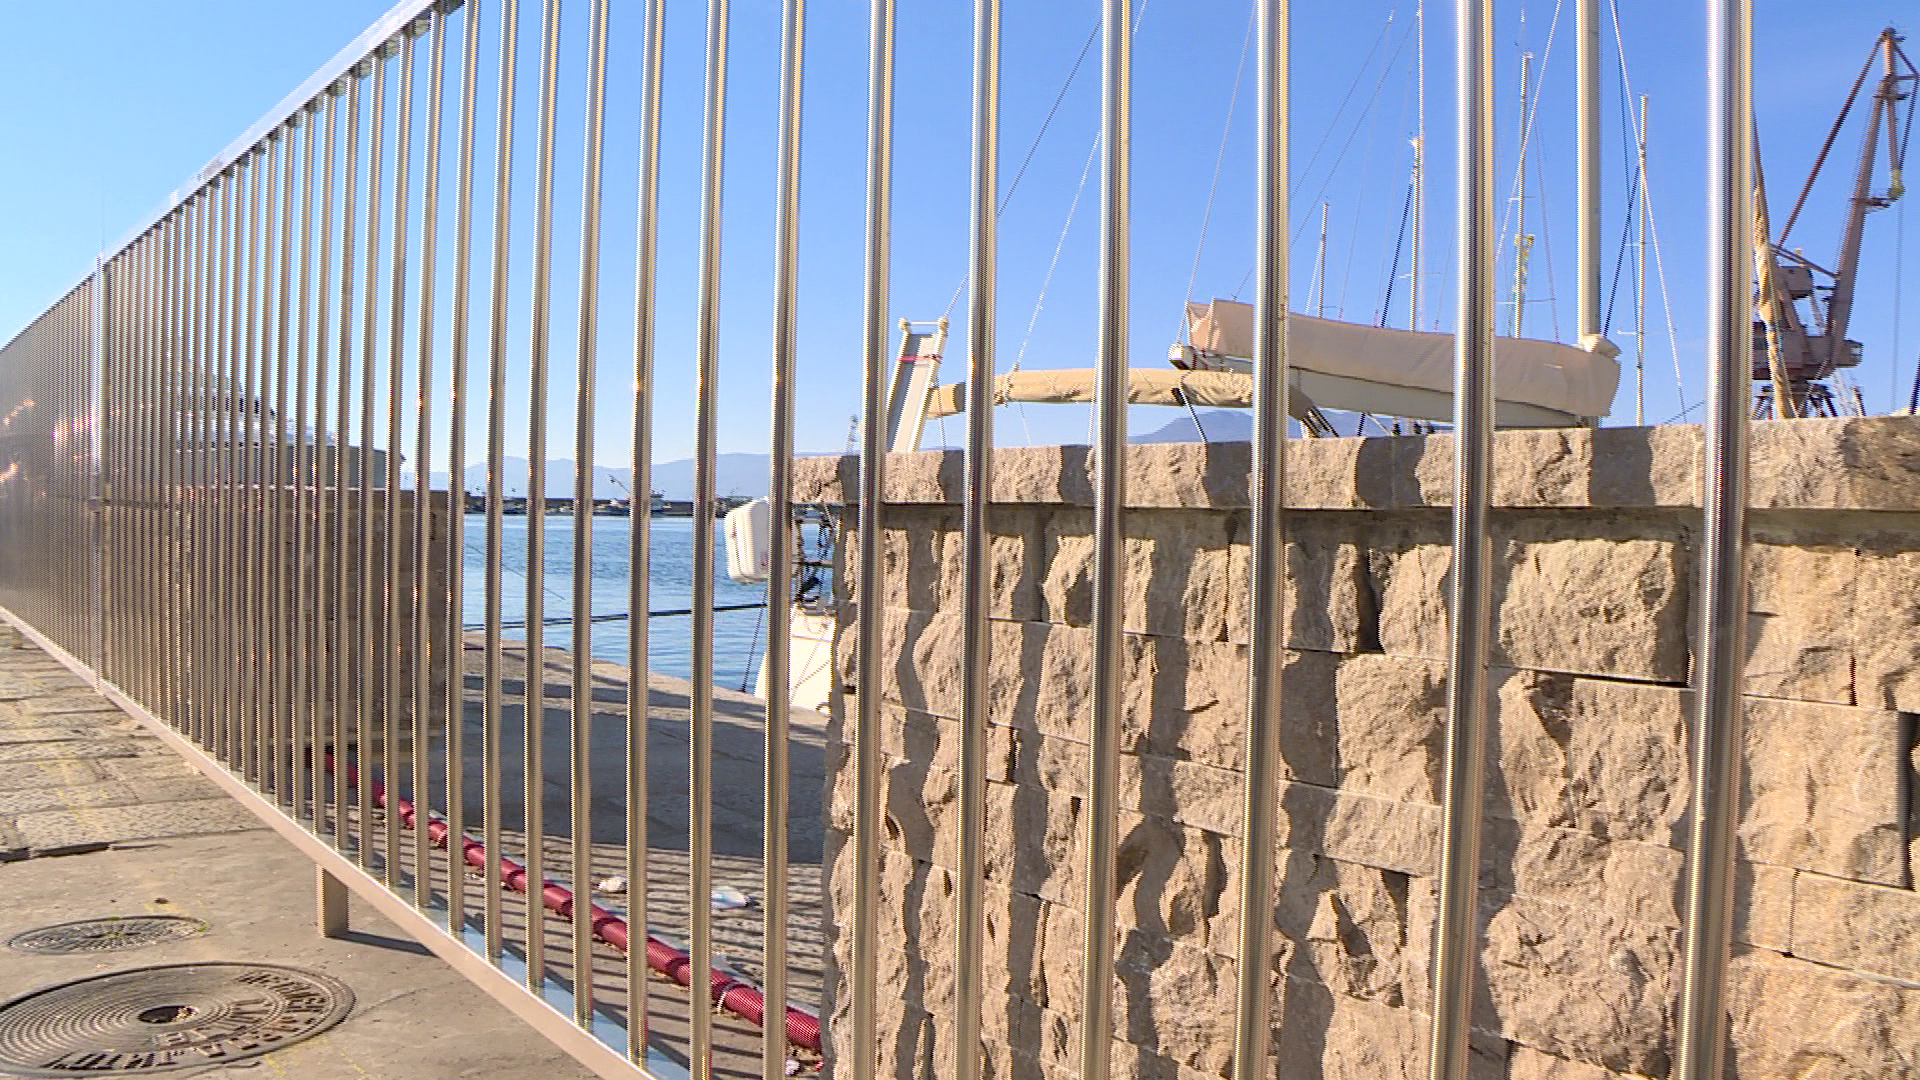 Vukorepa: Za godinu dana putnička obala bit će bez automobila, do tada ograde ostaju zbog sigurnosti